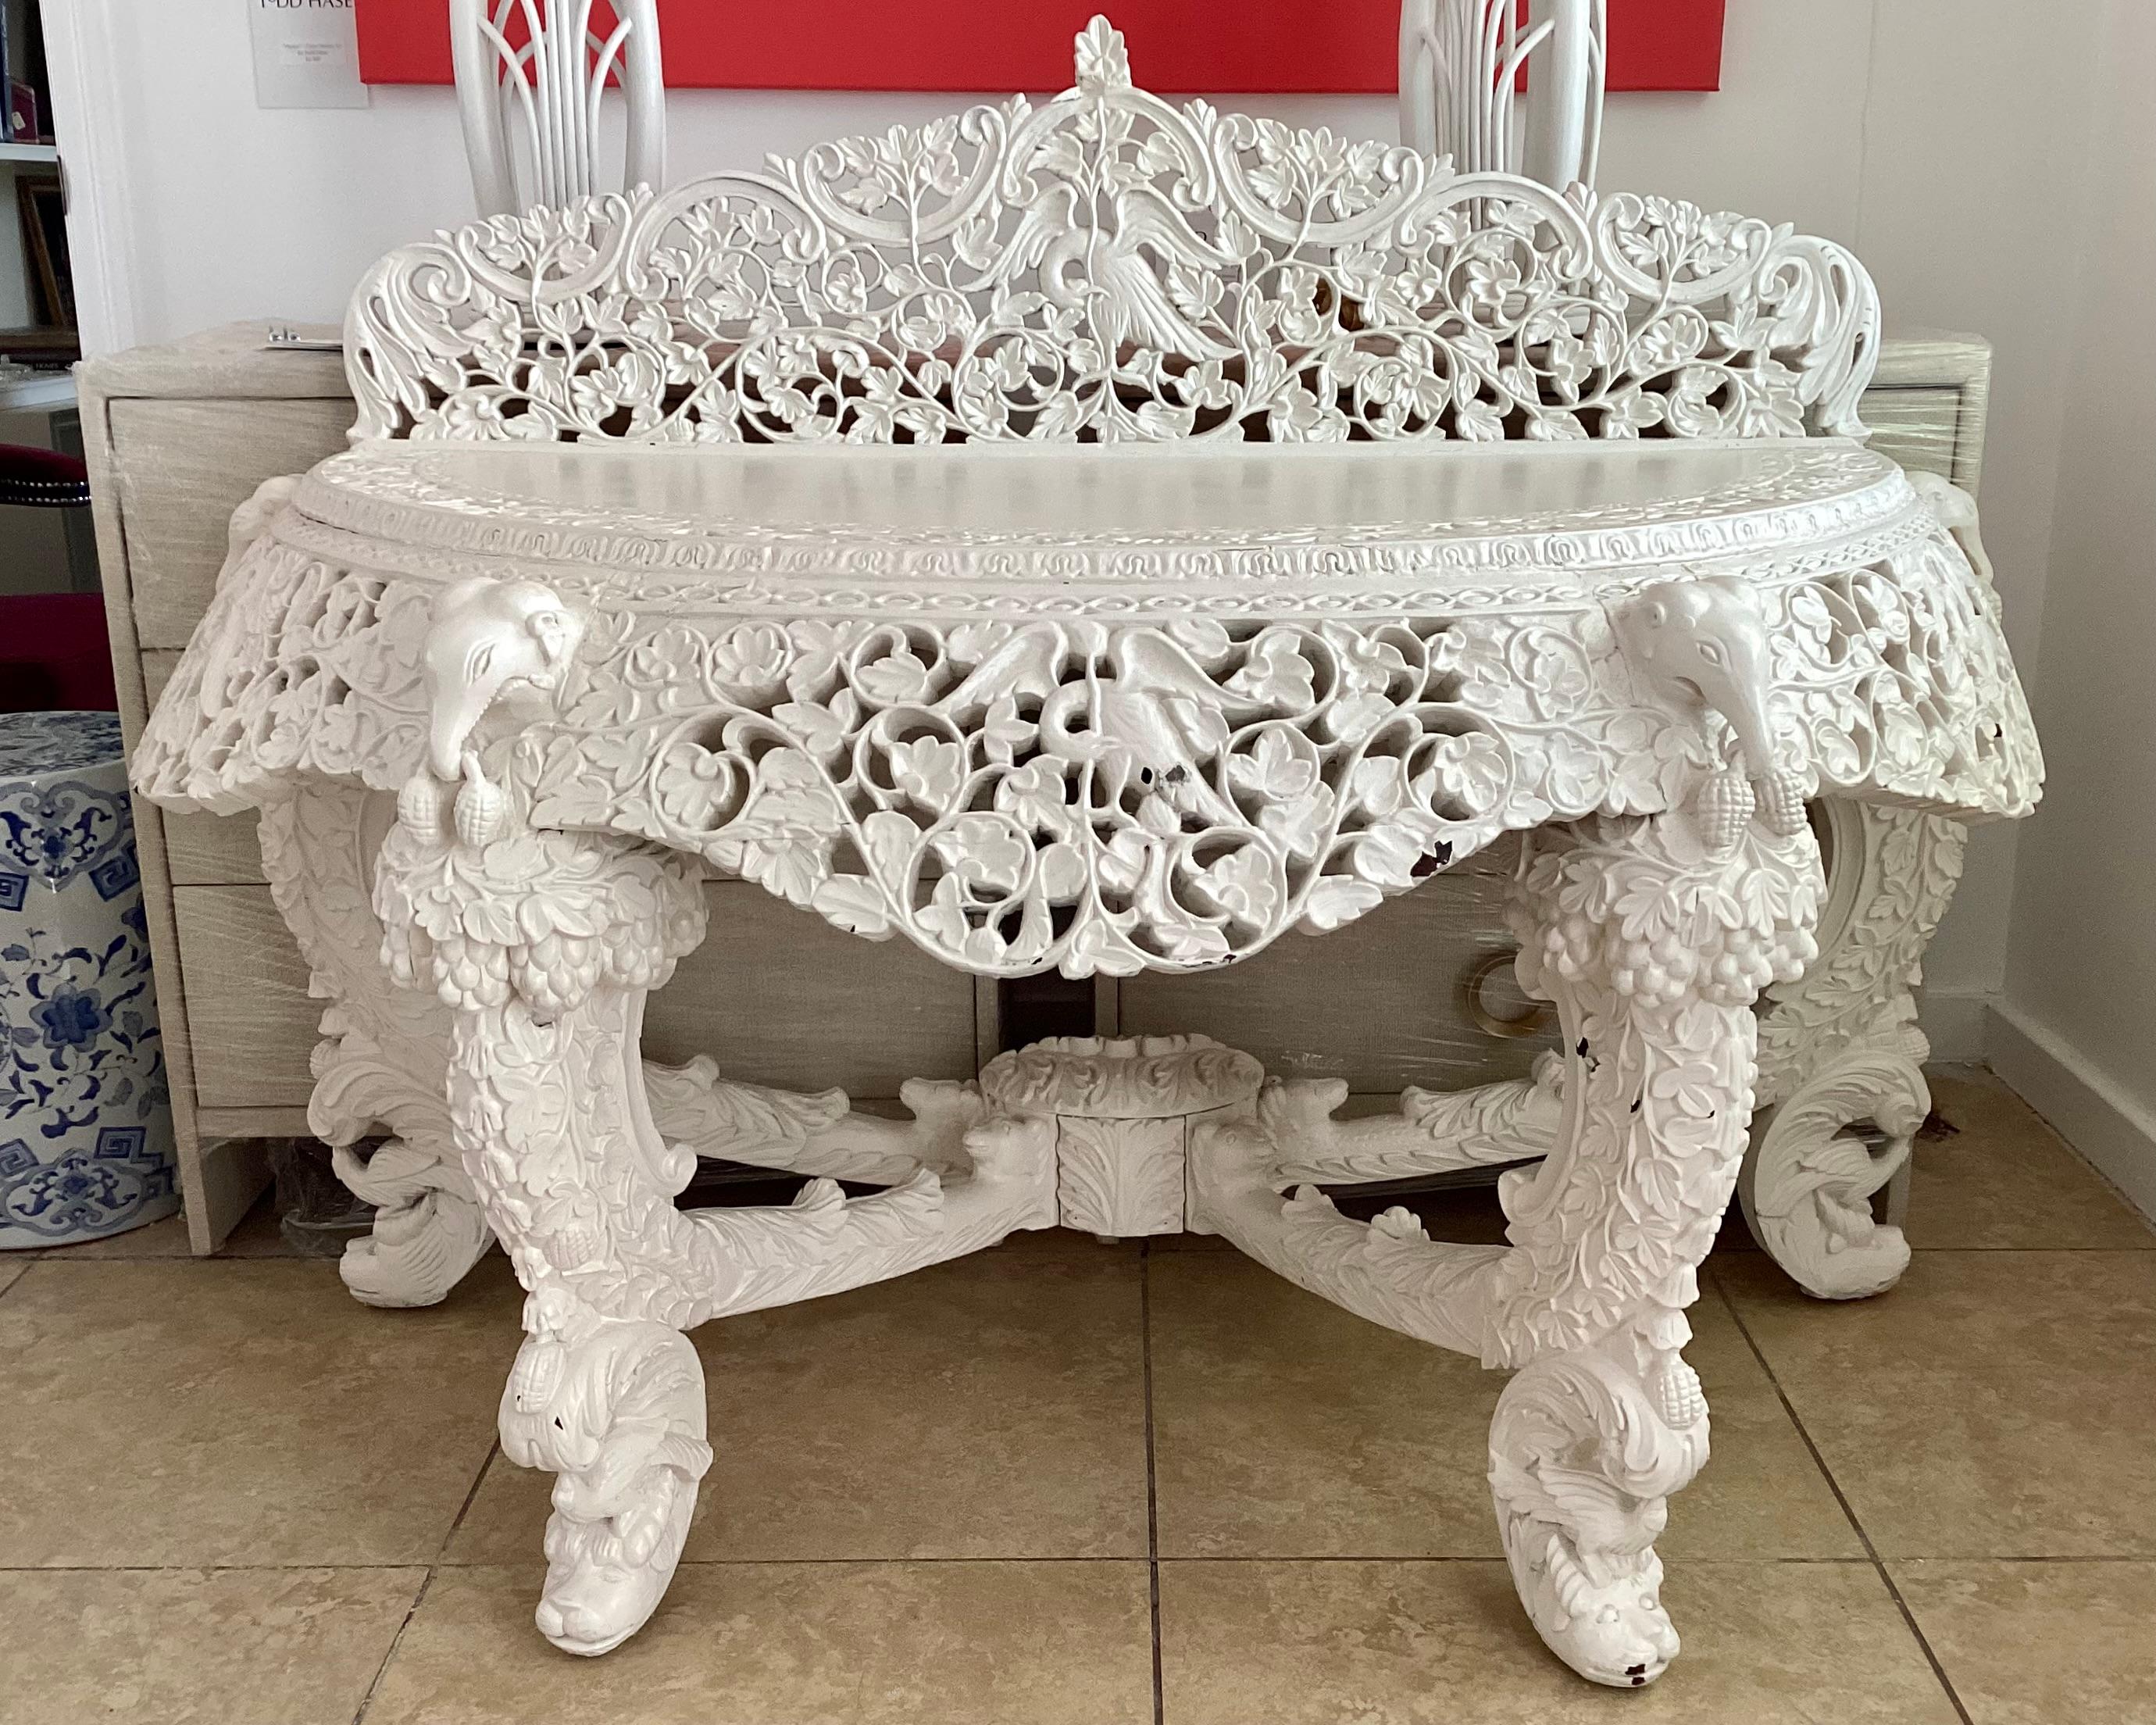 Table console anglo-indienne avec des sculptures très détaillées et complexes, fraîchement laquée en ivoire. Il y a des sculptures sur la plupart de la table, à l'exception de la surface. Ajoutez du style à votre maison. 